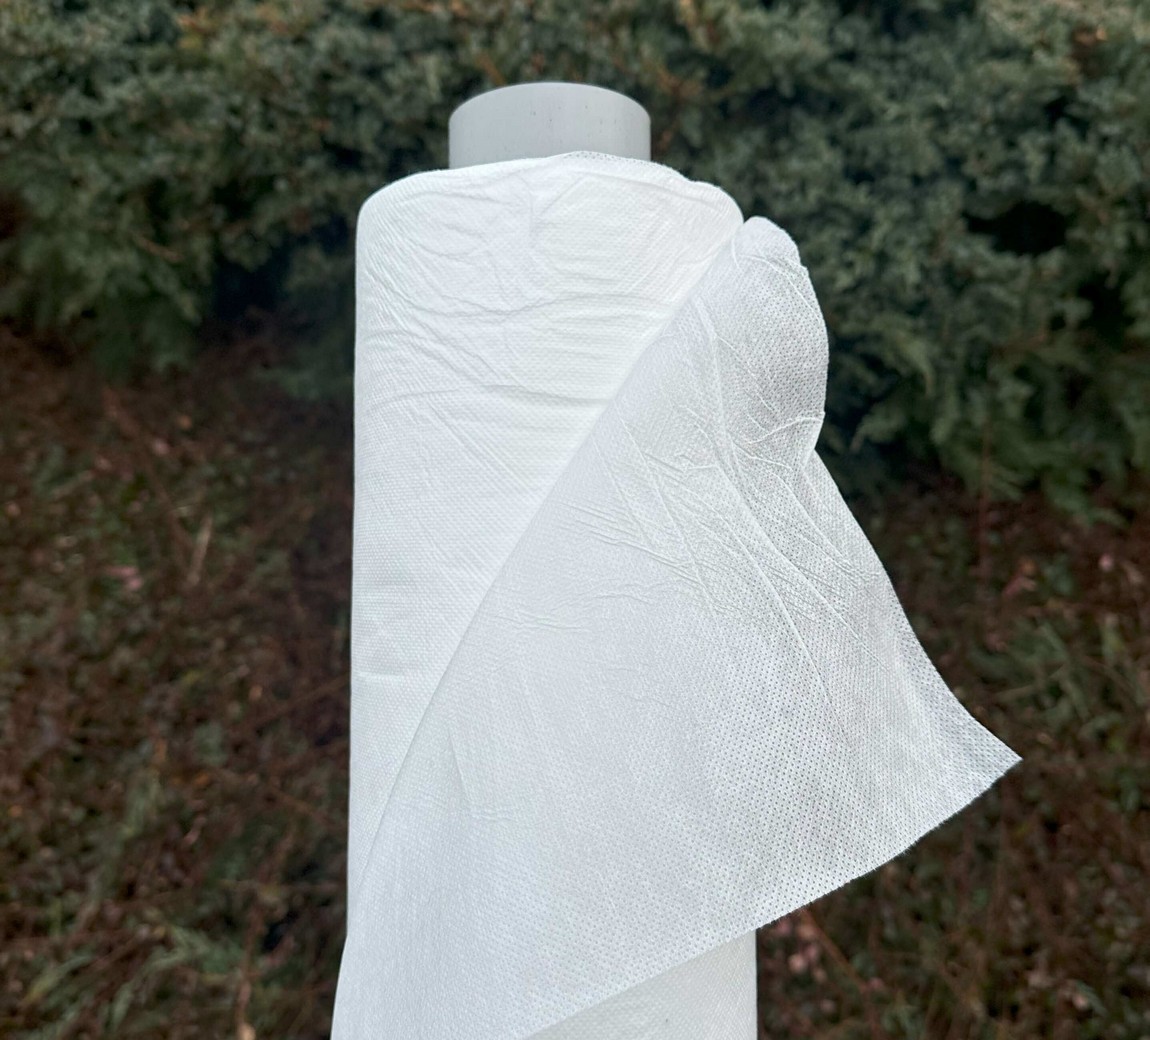 Jutabond Netkaná textílie proti mrazu, 50g/m2,  50m x 1,6m  - bílá EXTRA SILNÁ ZAHRADA Sklad6 0374 100